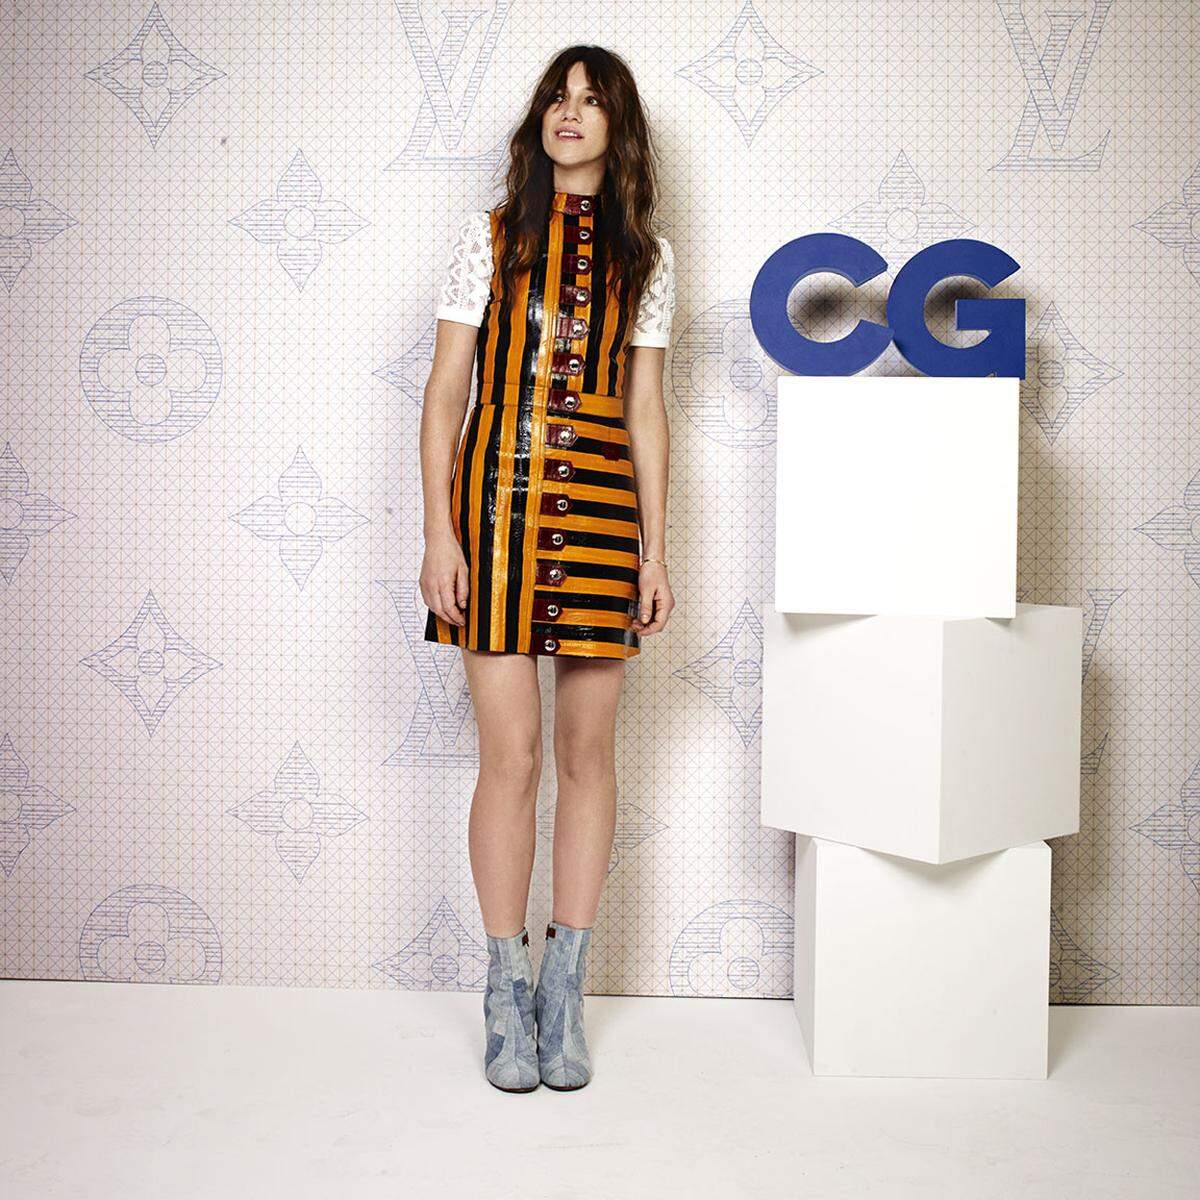 Vuitton-Testimonial und Muse Charlotte Gainsbourg gefiel sich in Streifen.